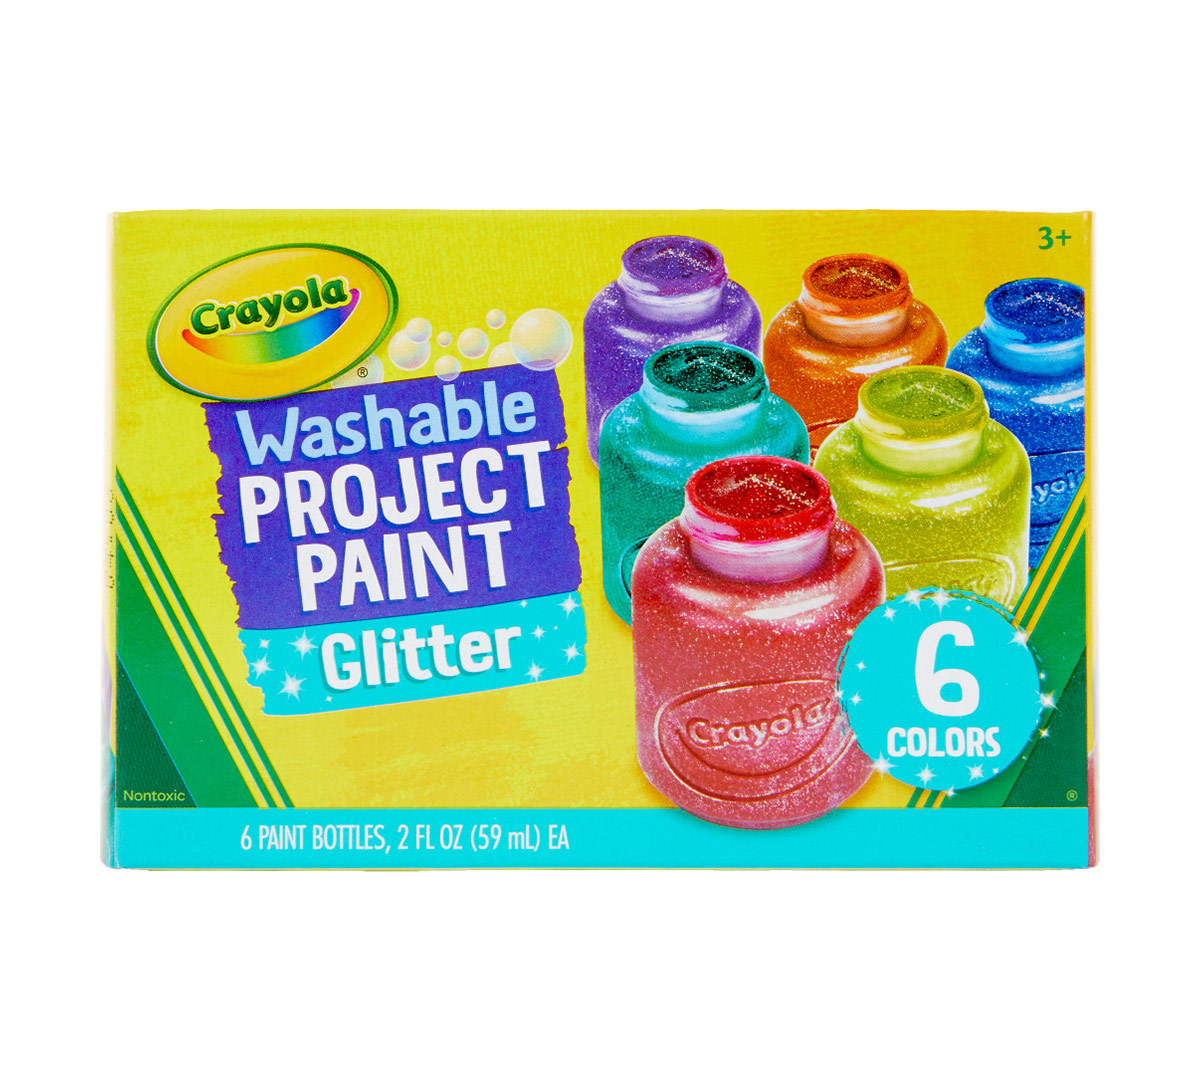 Glitter Paints, 6 Count Paint Set, Crayola.com